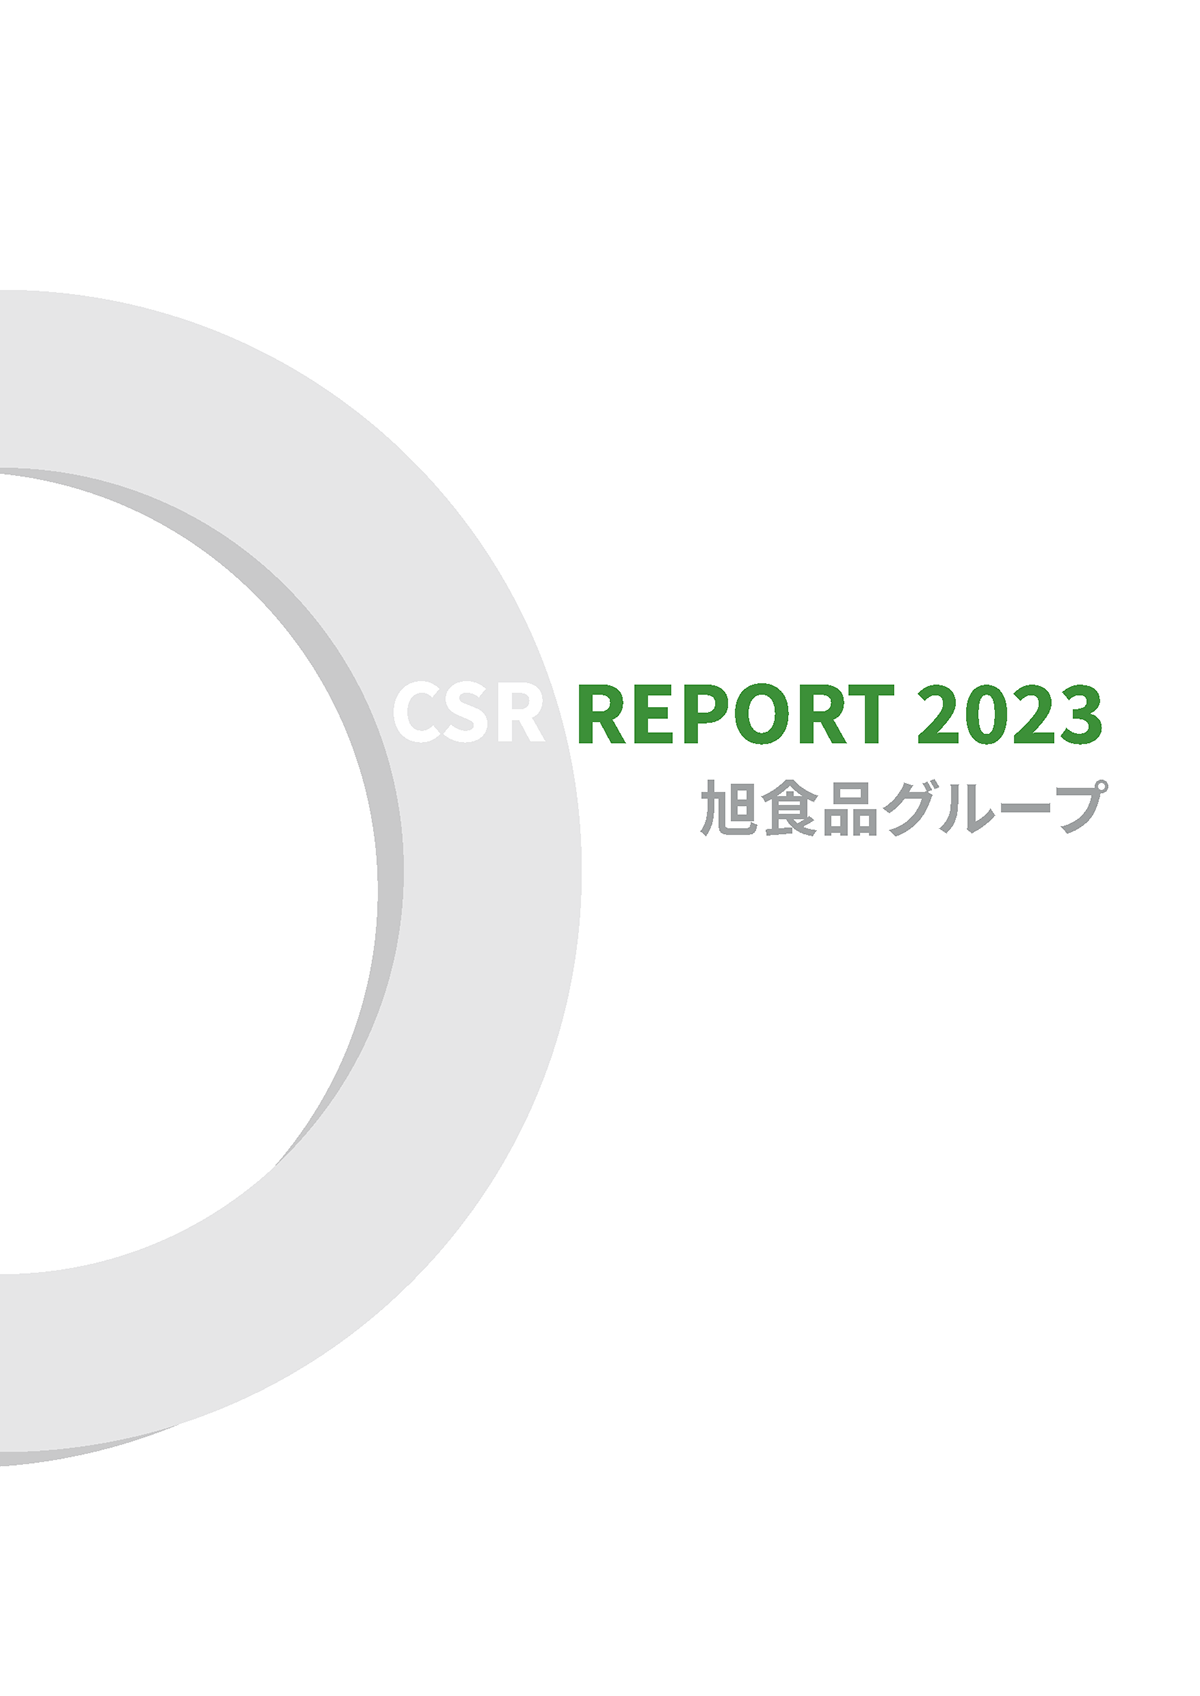 2023年CSR報告書